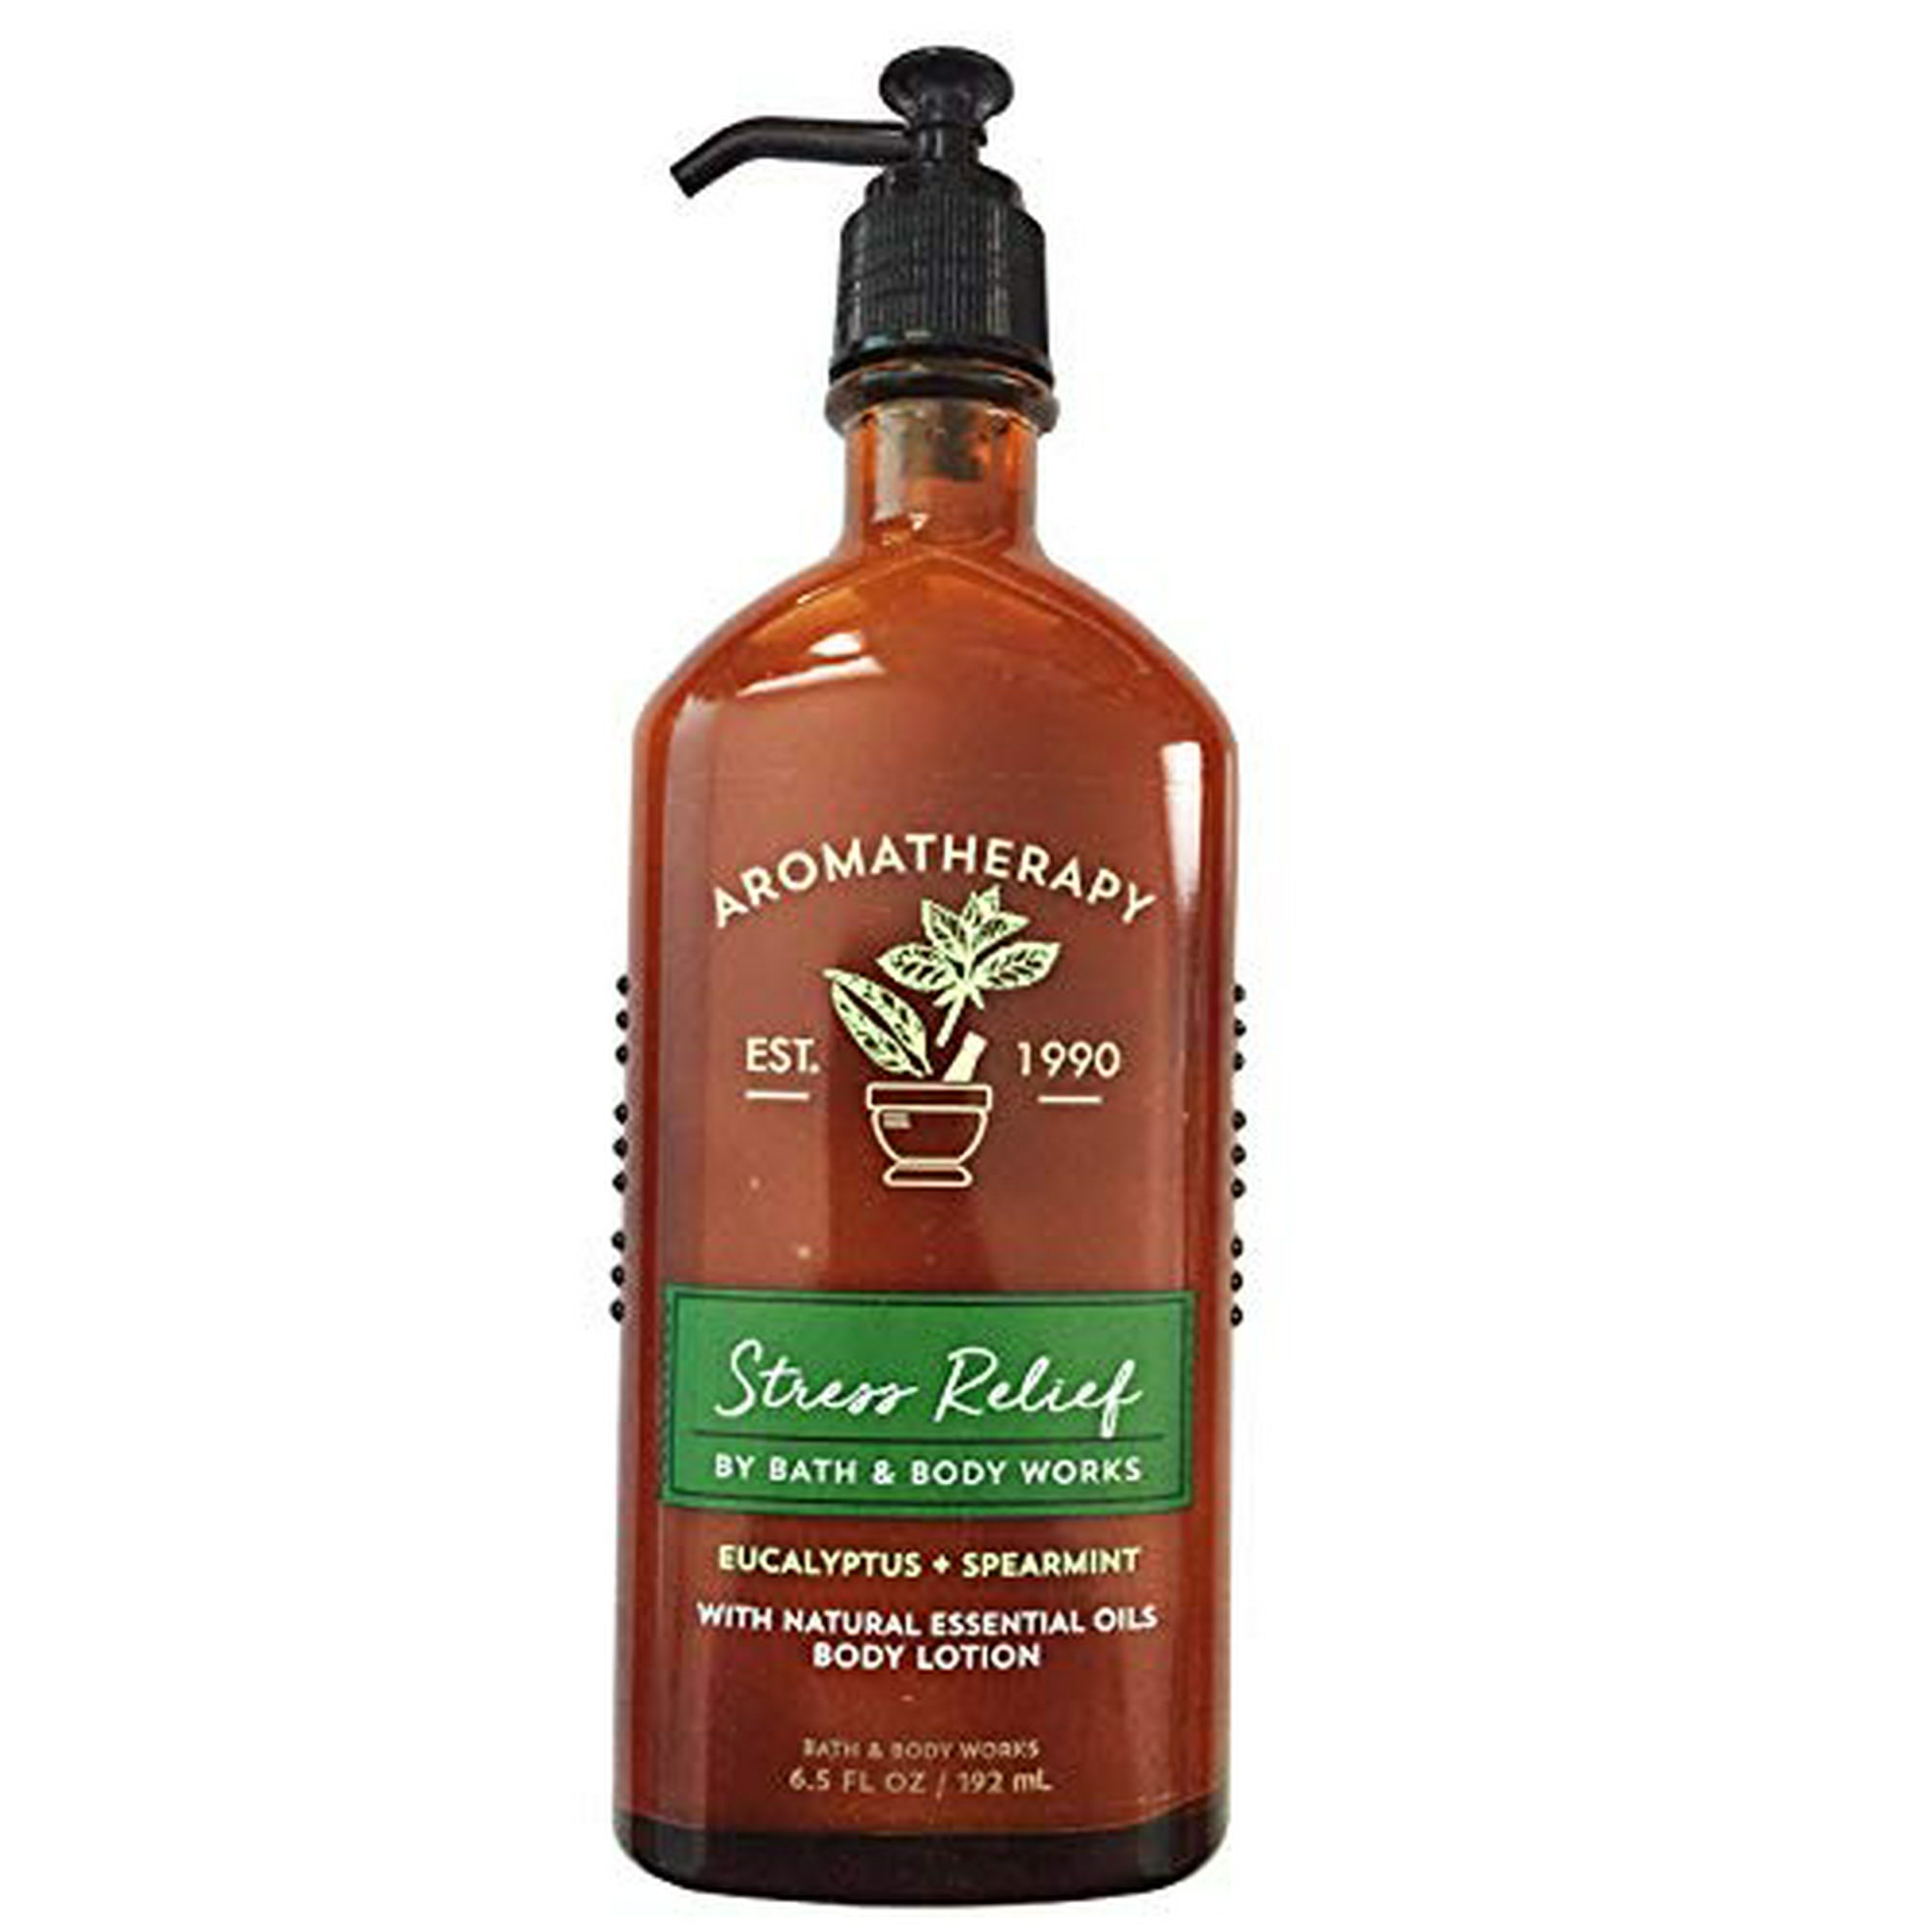 Bath Body Works Aromatherapy Stress Relief - Eucalyptus + Spearmint Body  Lotion, 6.5 Fl Oz | Walmart Canada